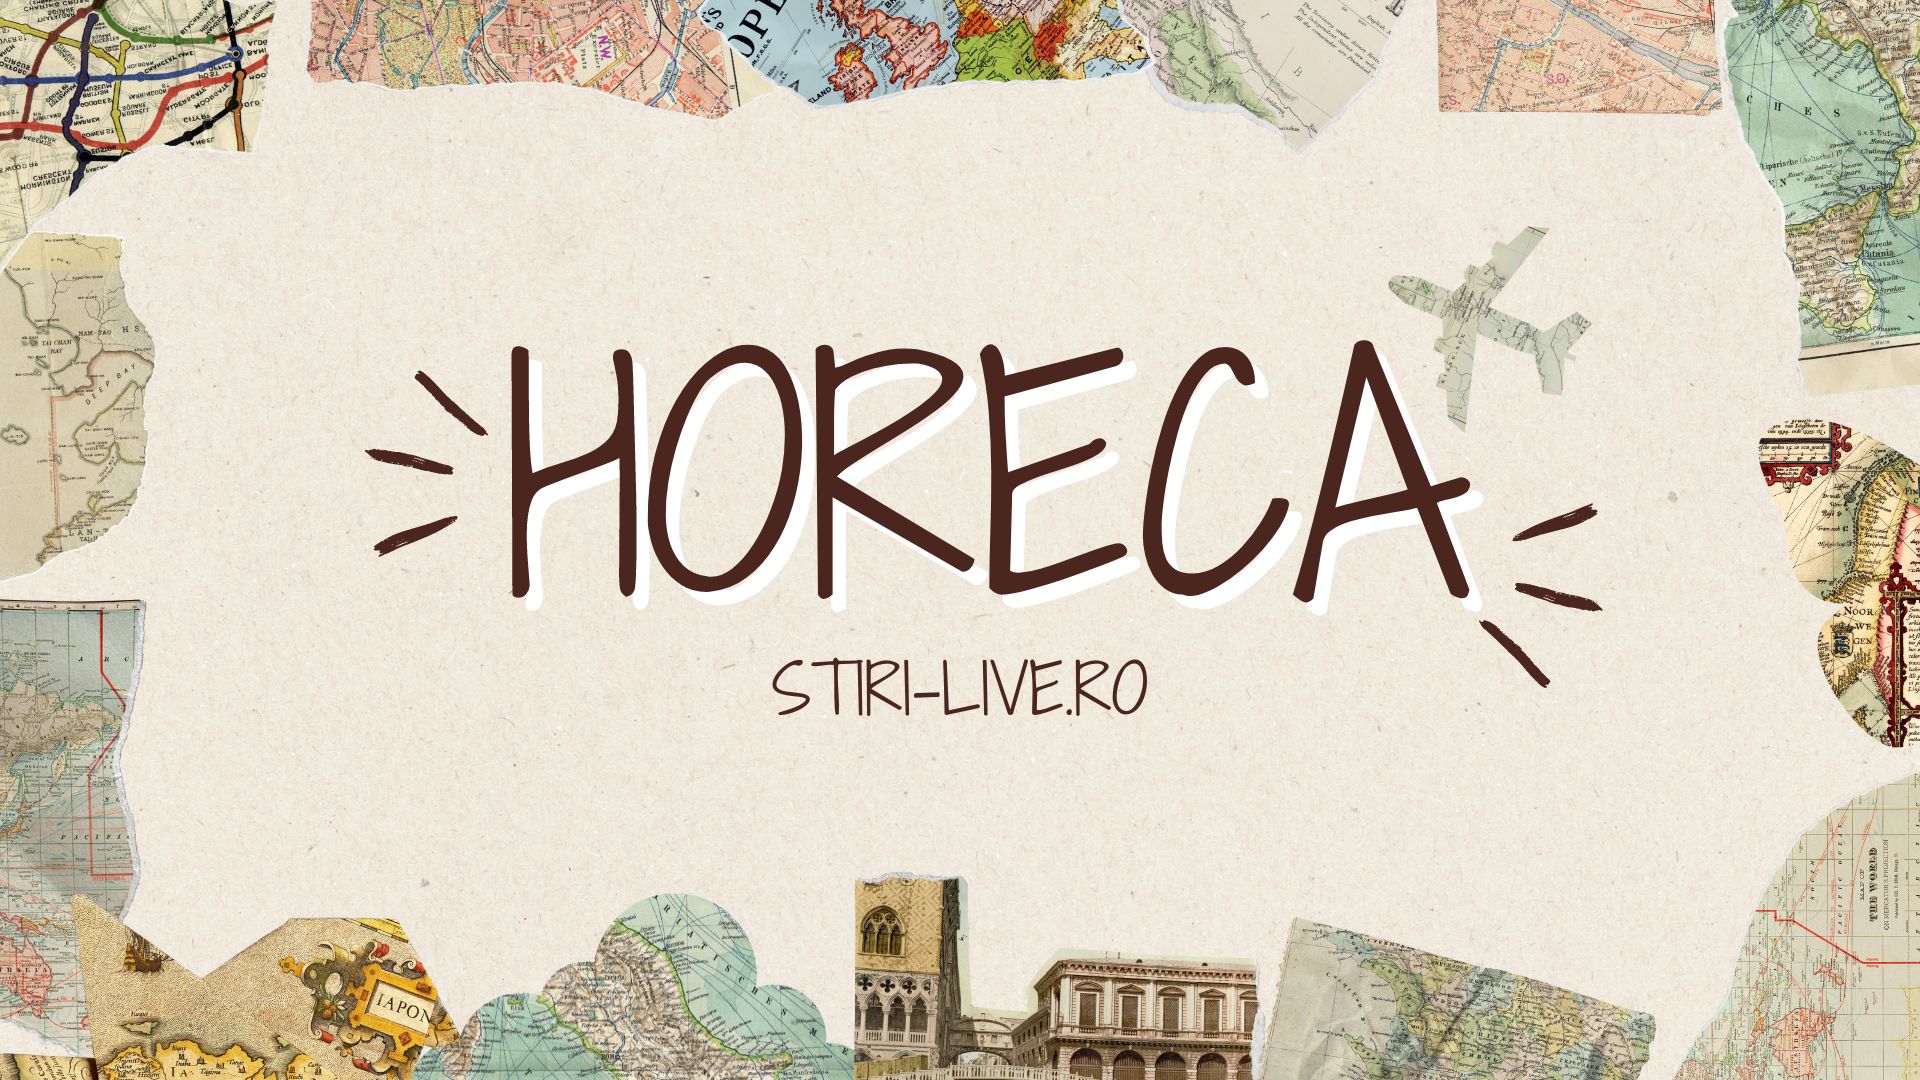 Investiții în HoReCa: Oportunități de creștere și dezvoltare